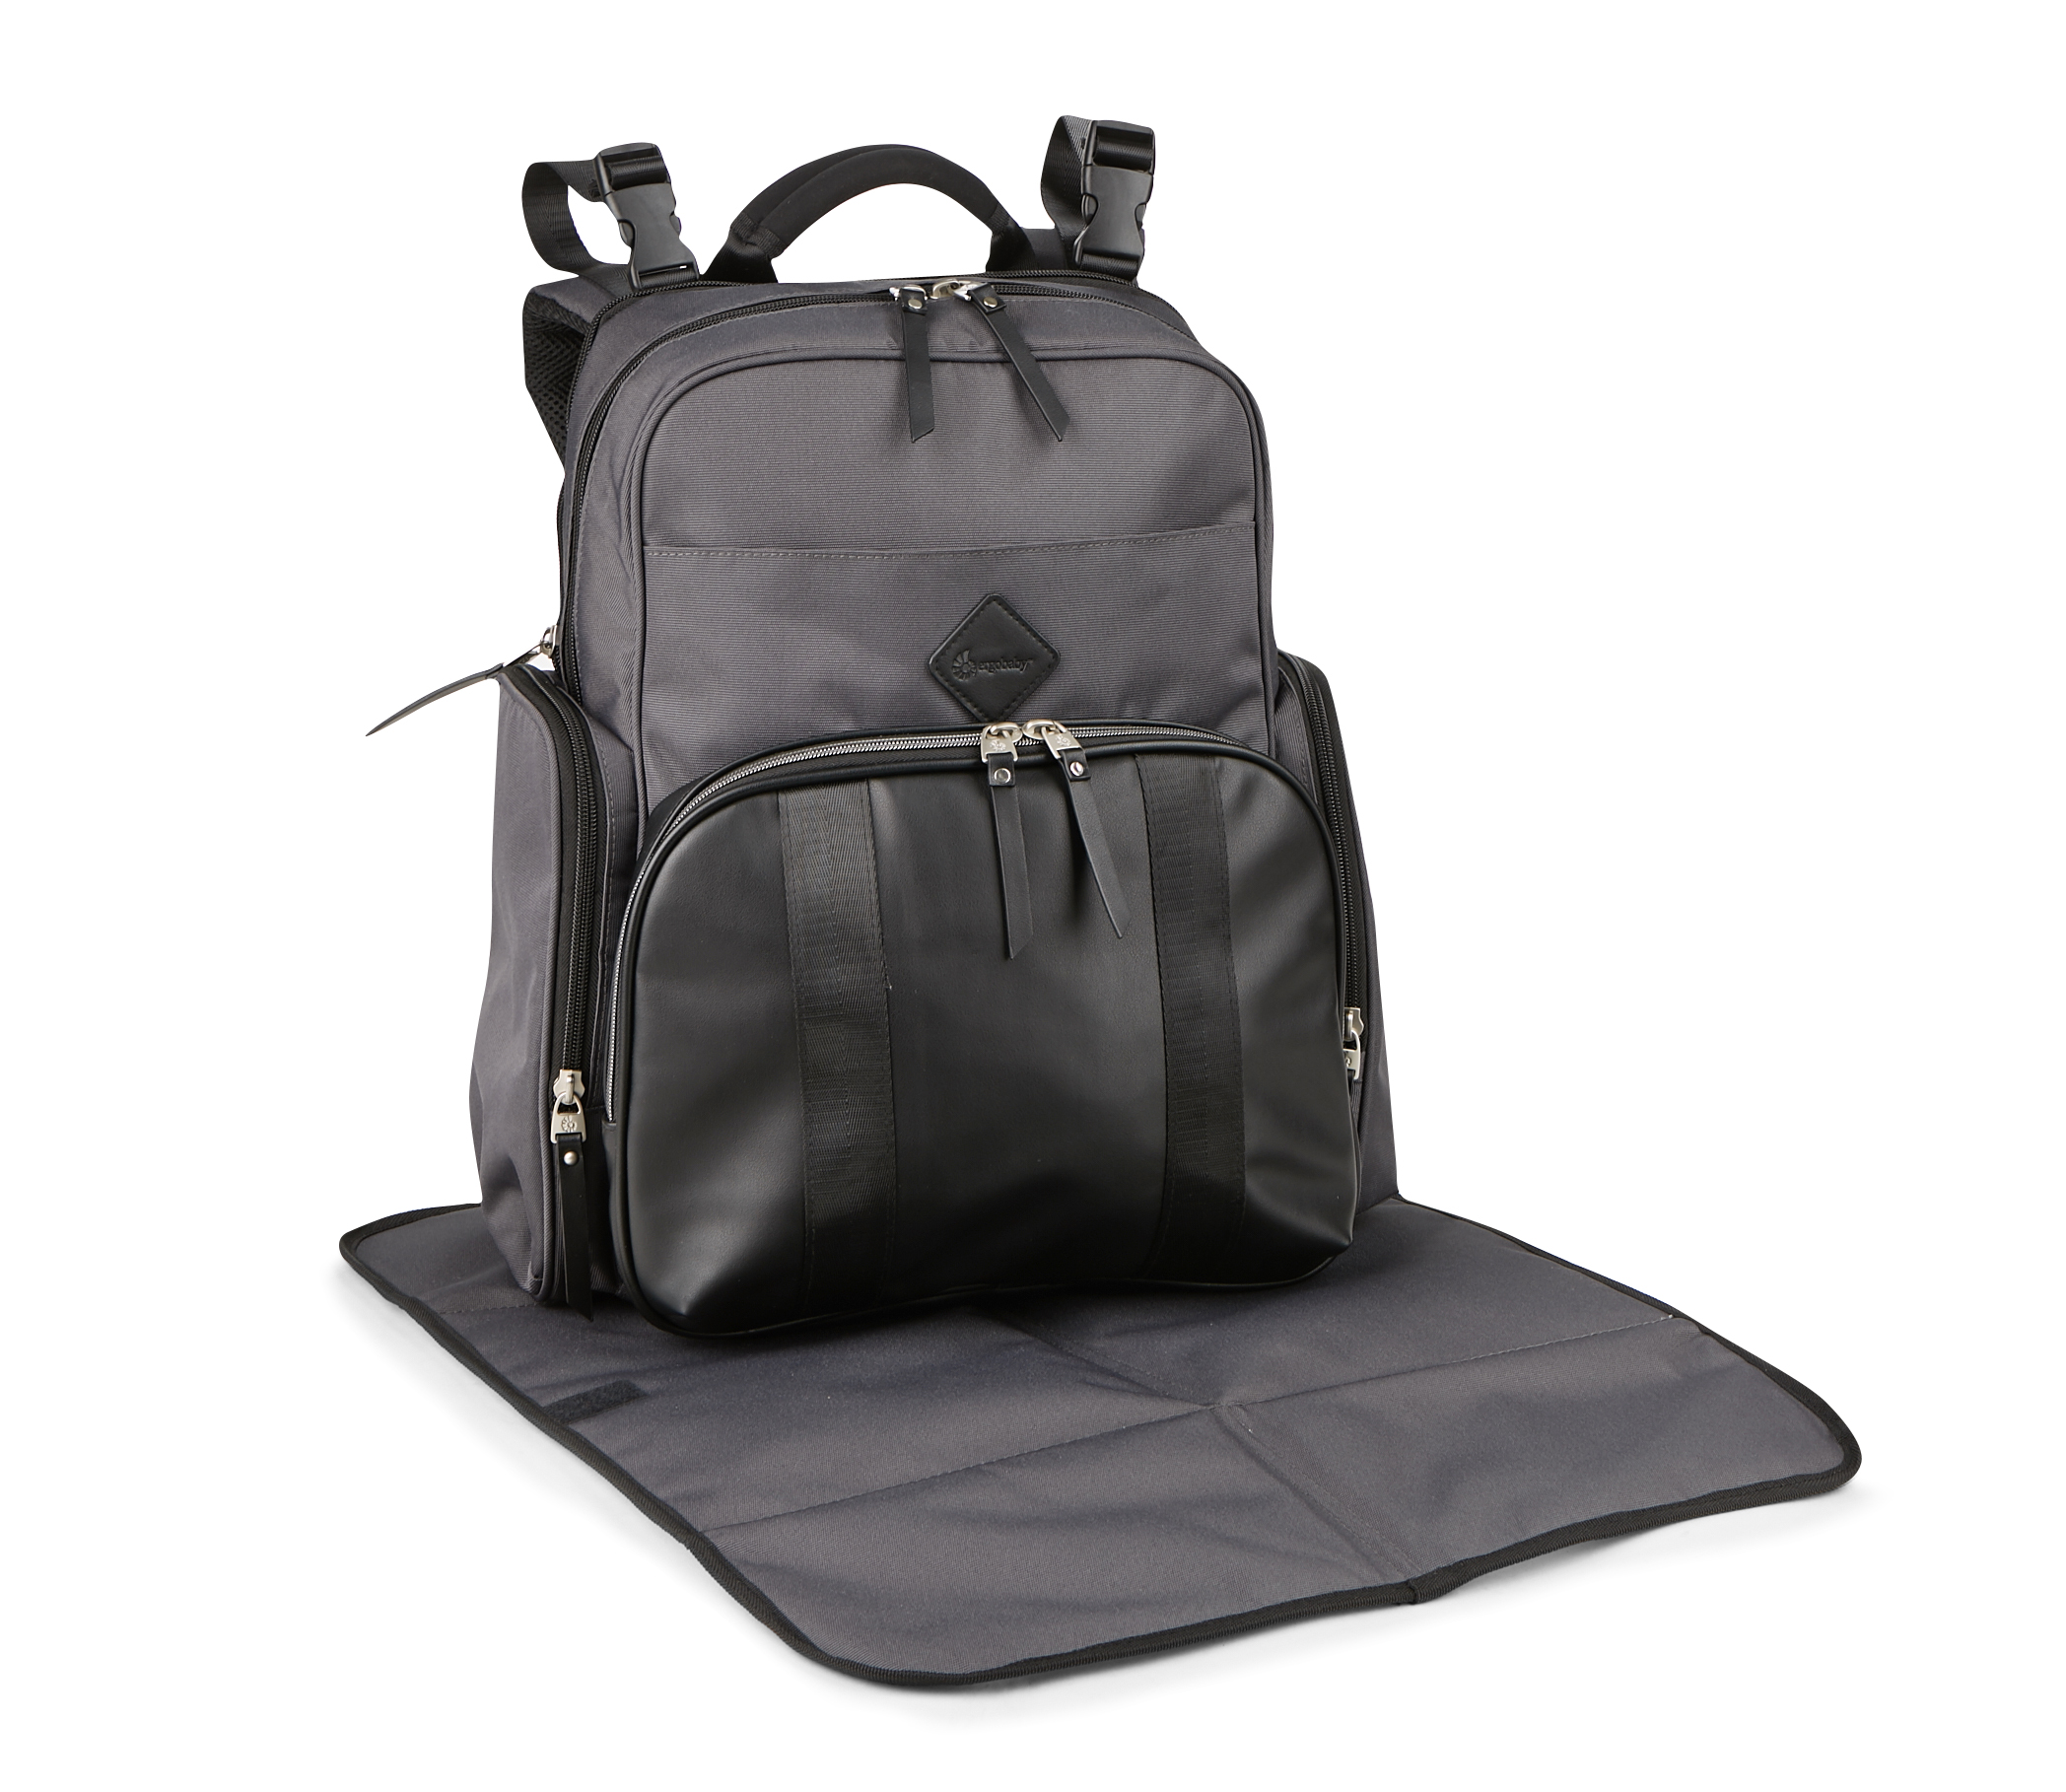 Ergobaby Adjustable Shoulder Strap Inside Pockets Backpack Diaper Bags, Black - image 2 of 10